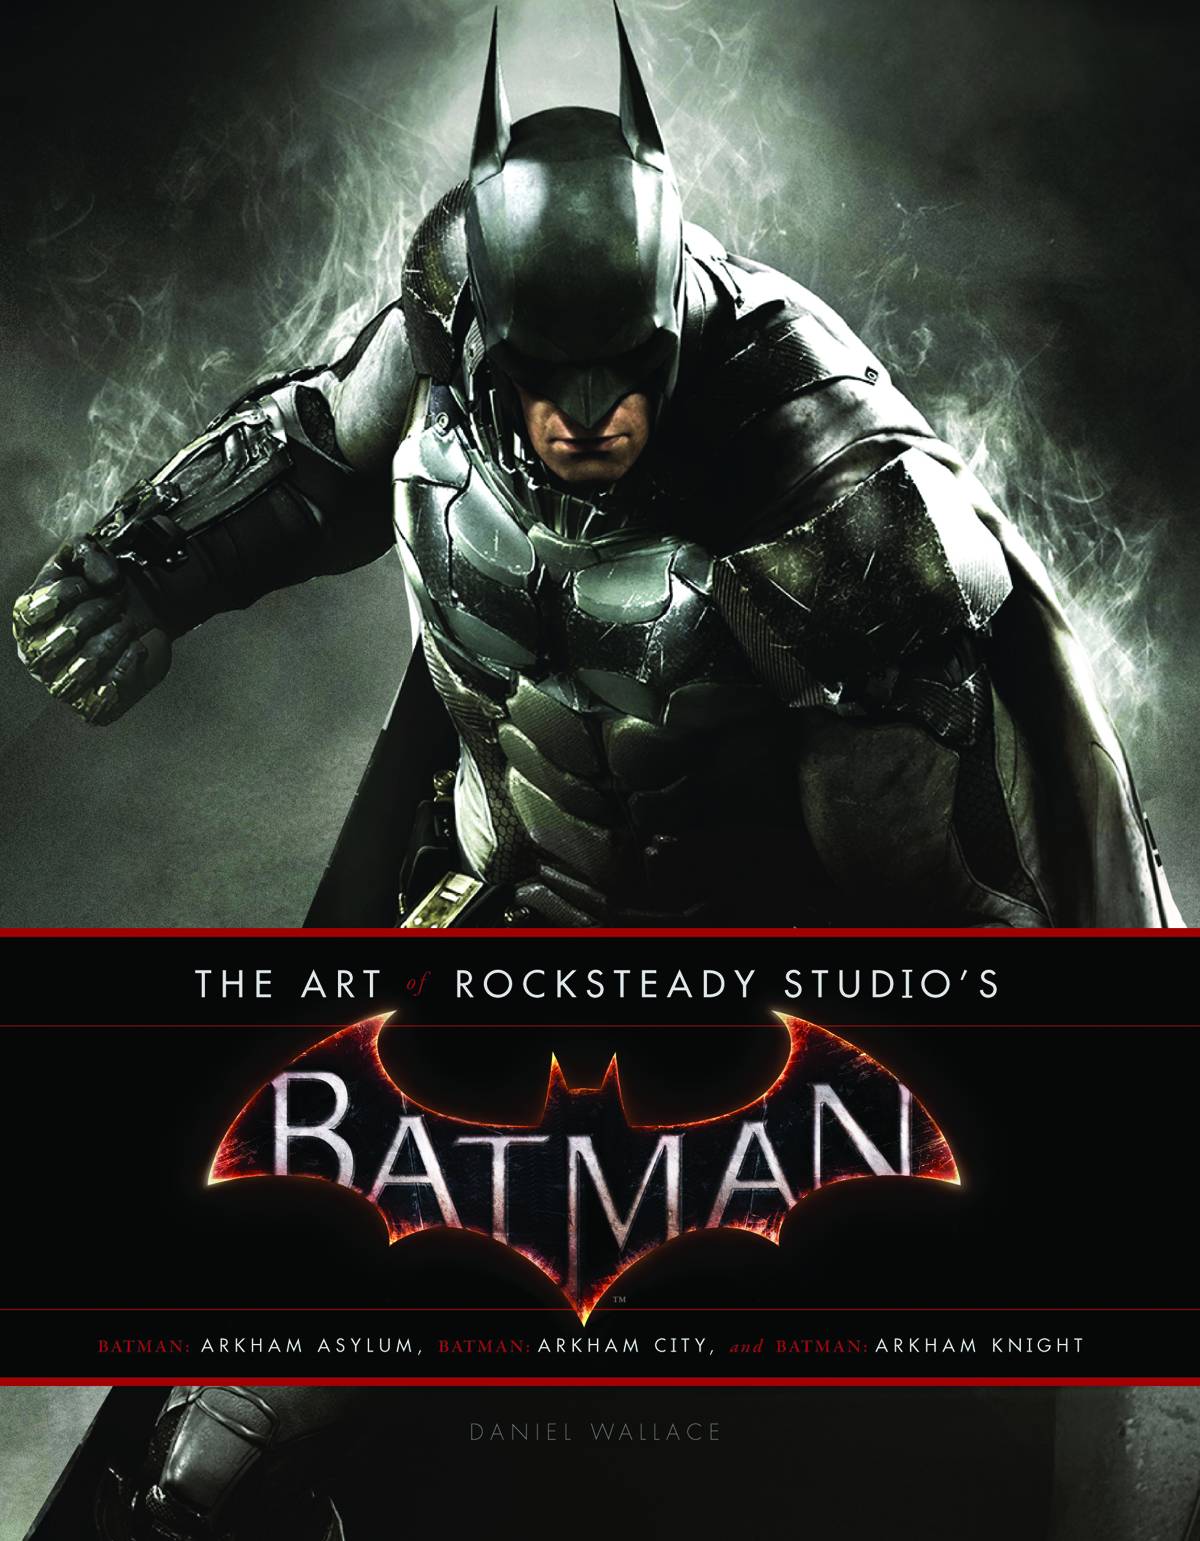 最高の品質 Rocksteady's of Art The Batman バットマン / アート 